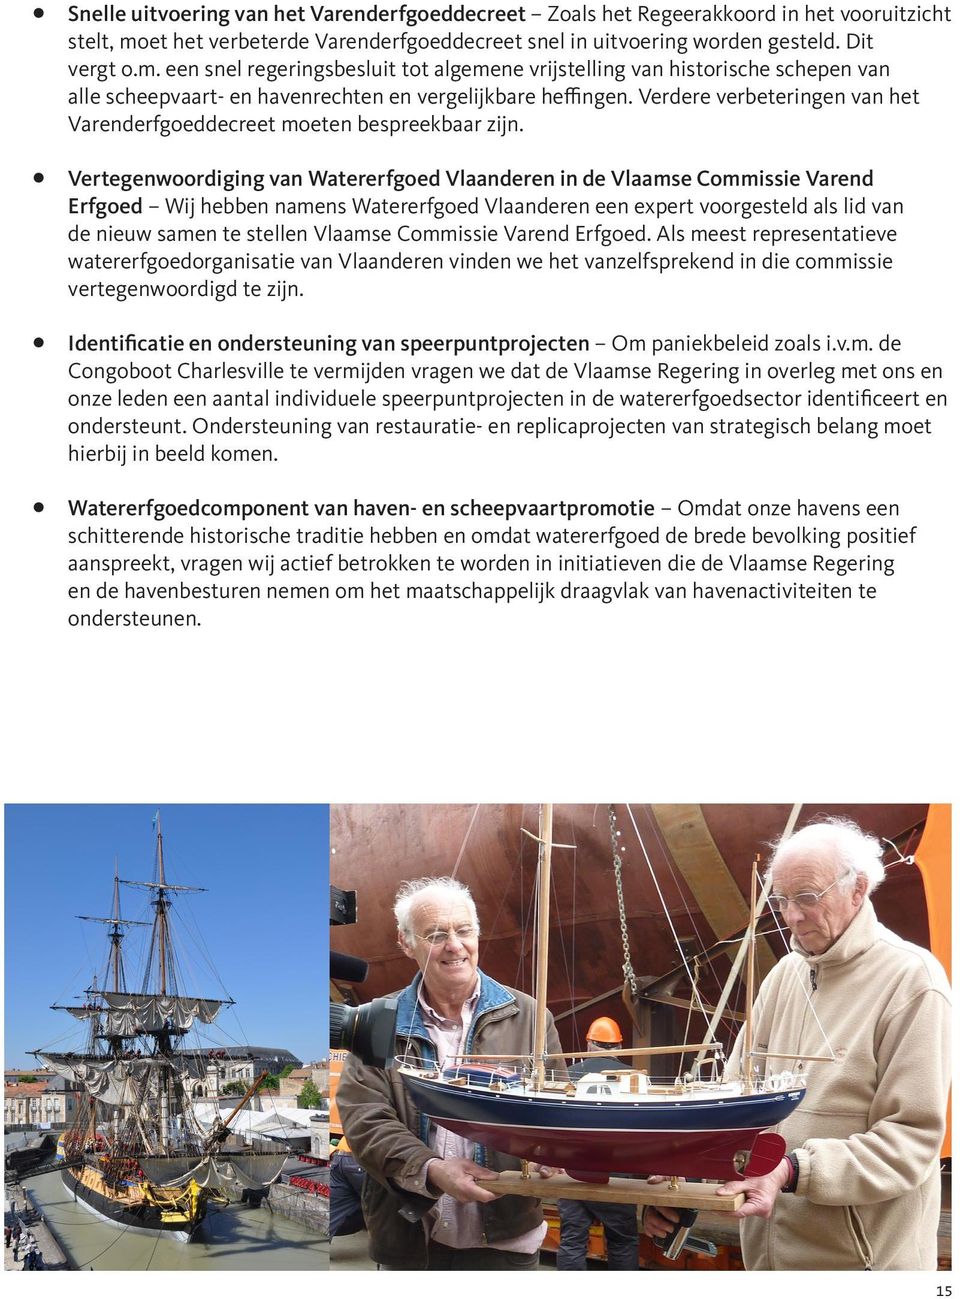 een snel regeringsbesluit tot algemene vrijstelling van historische schepen van alle scheepvaart- en havenrechten en vergelijkbare heffingen.